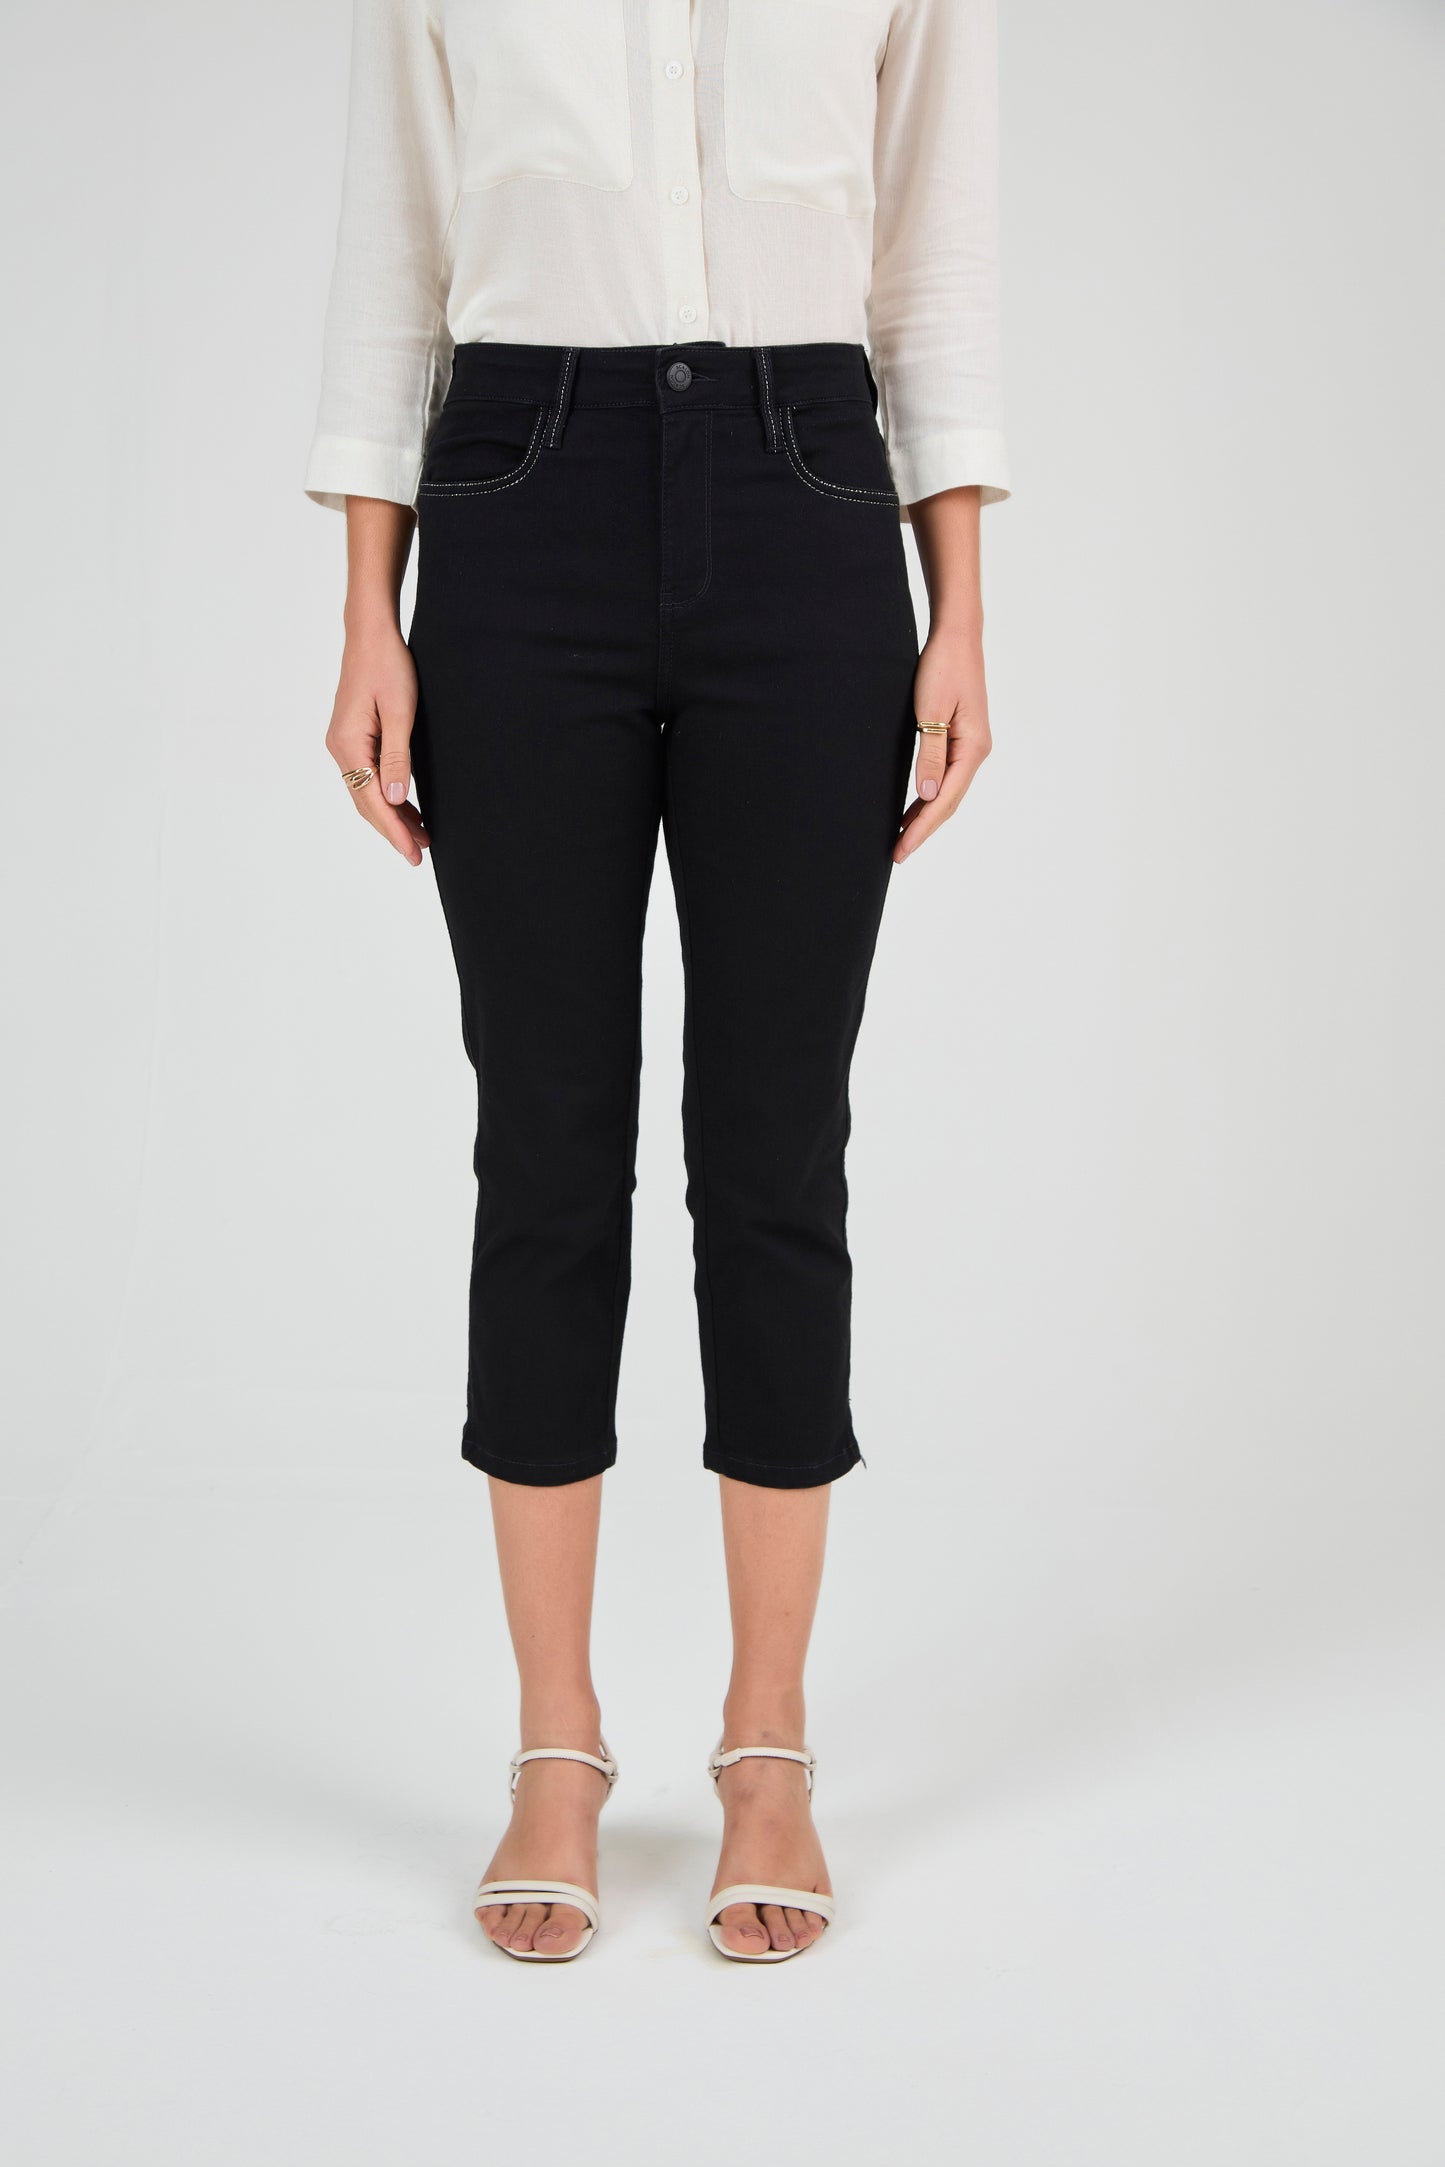 calça jeans black cropped cintura intermediária detalhes metalizado